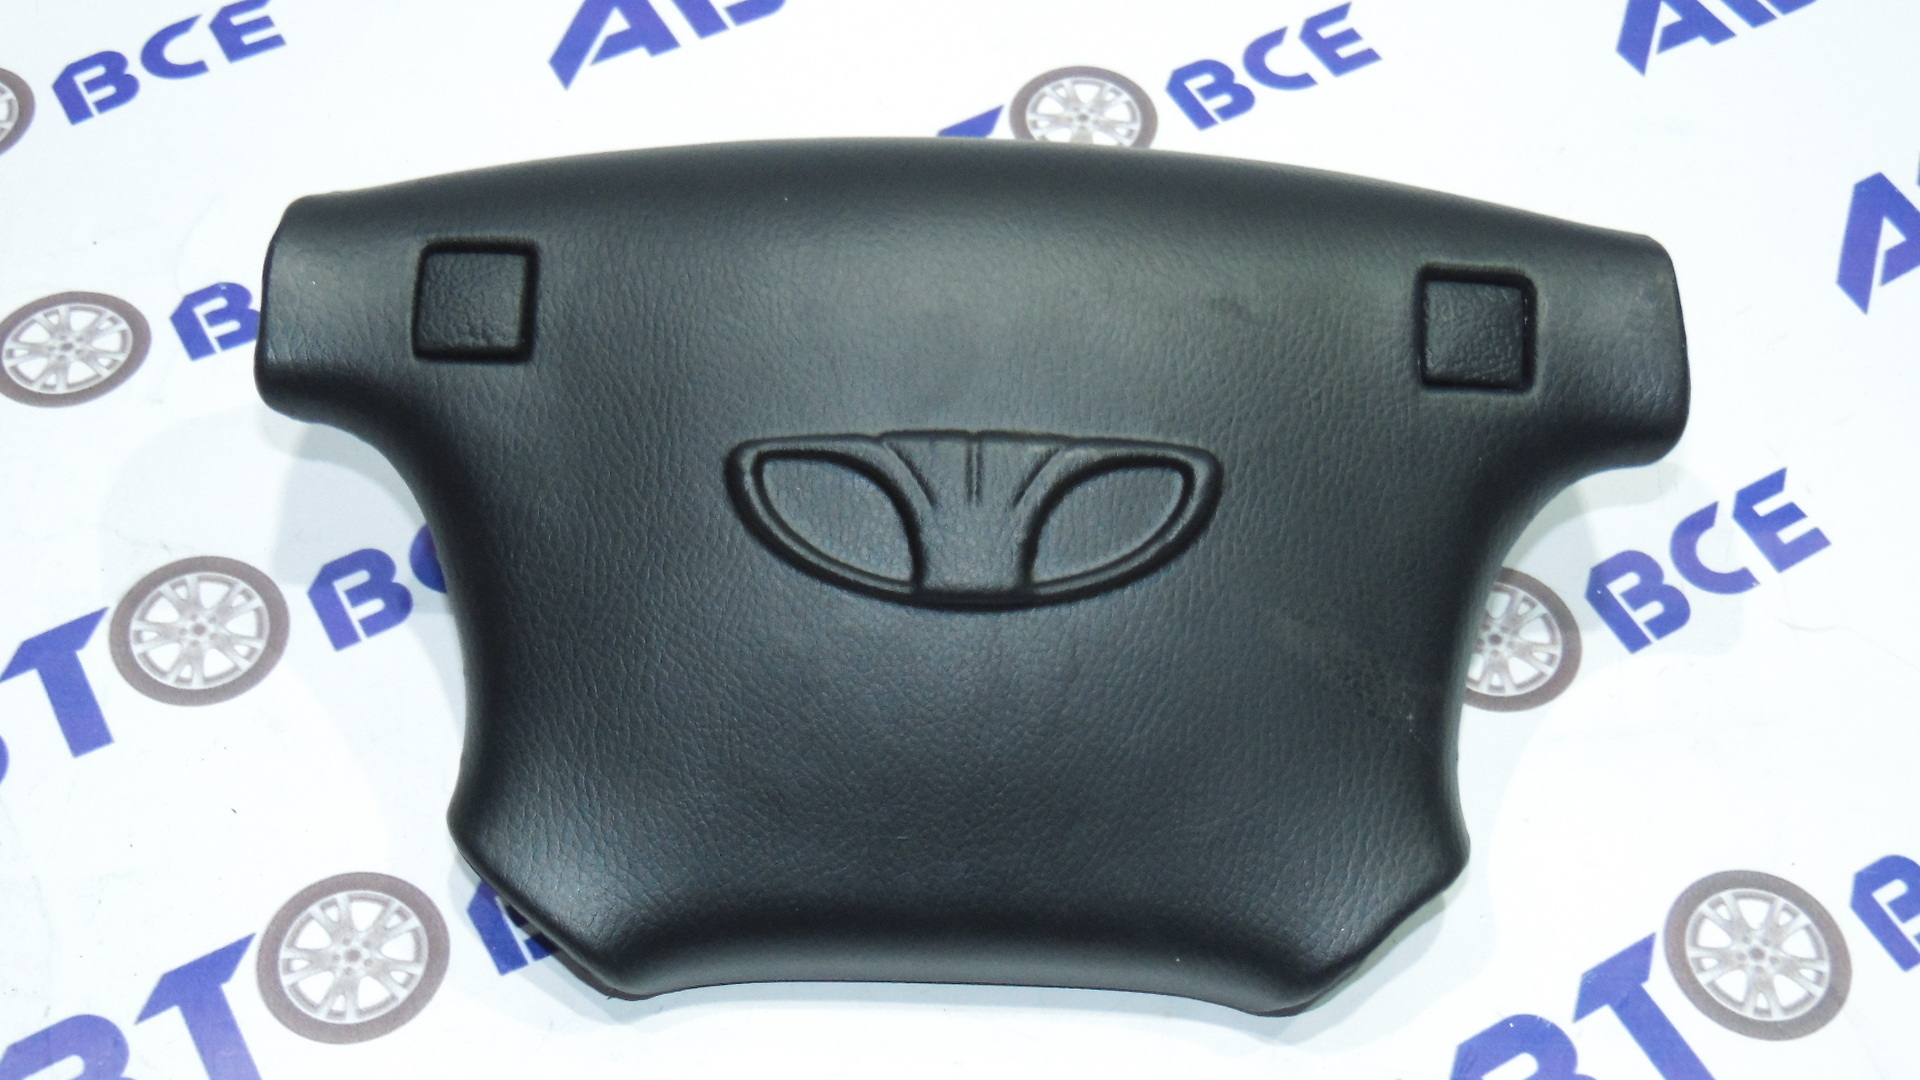 Крышка руля - кнопка сигнала - заглушка муляж Airbag (в руль) Lanos на 4-х спицах DAEWOO